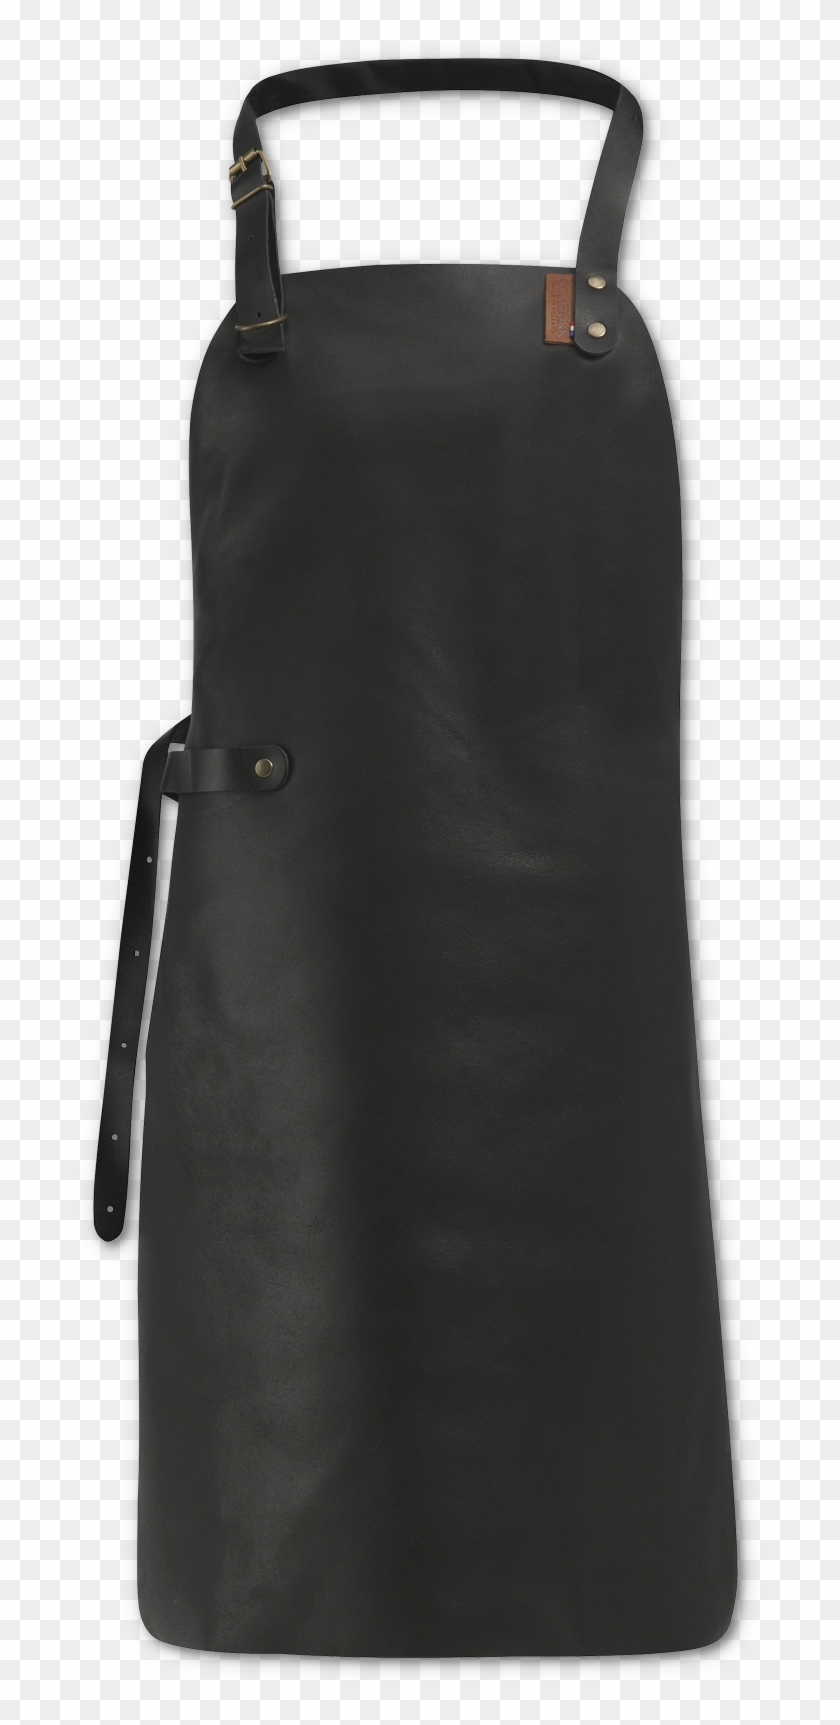 Leather Apron Black - Black Leather Apron Clipart #4202138